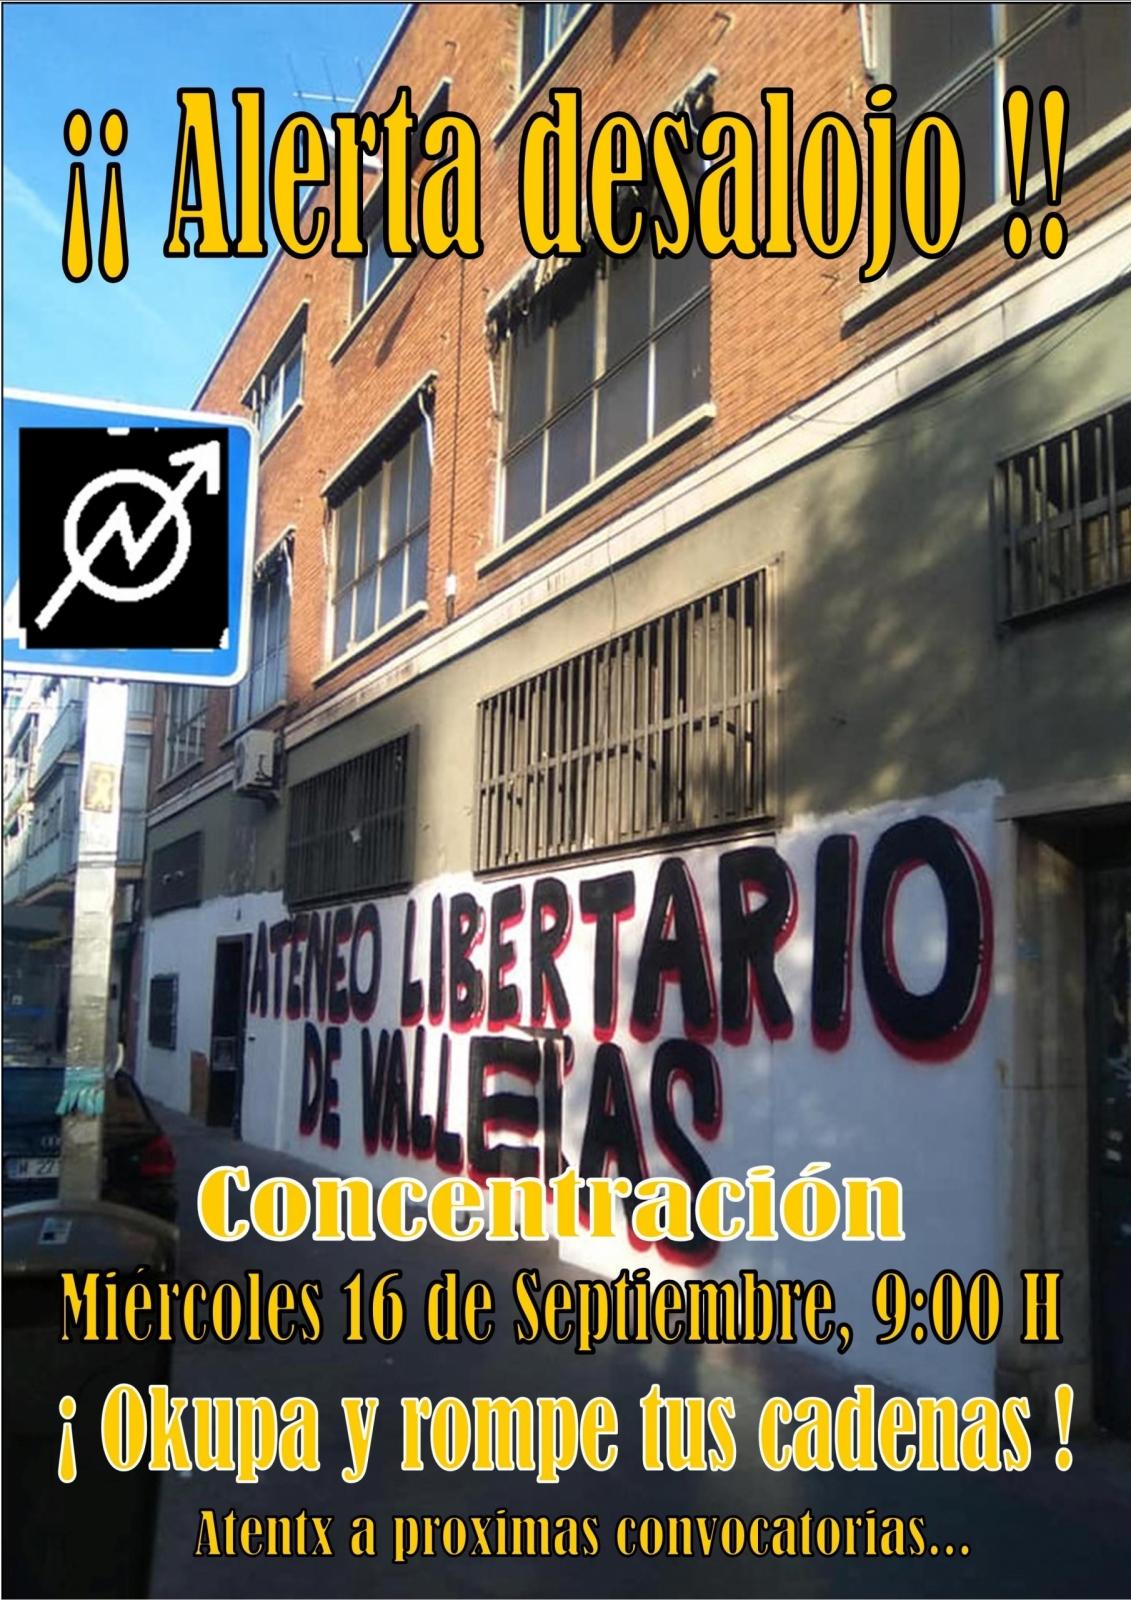 Madrid: Amenaza inminente de desalojo del Ateneo Libertario de Vallekas